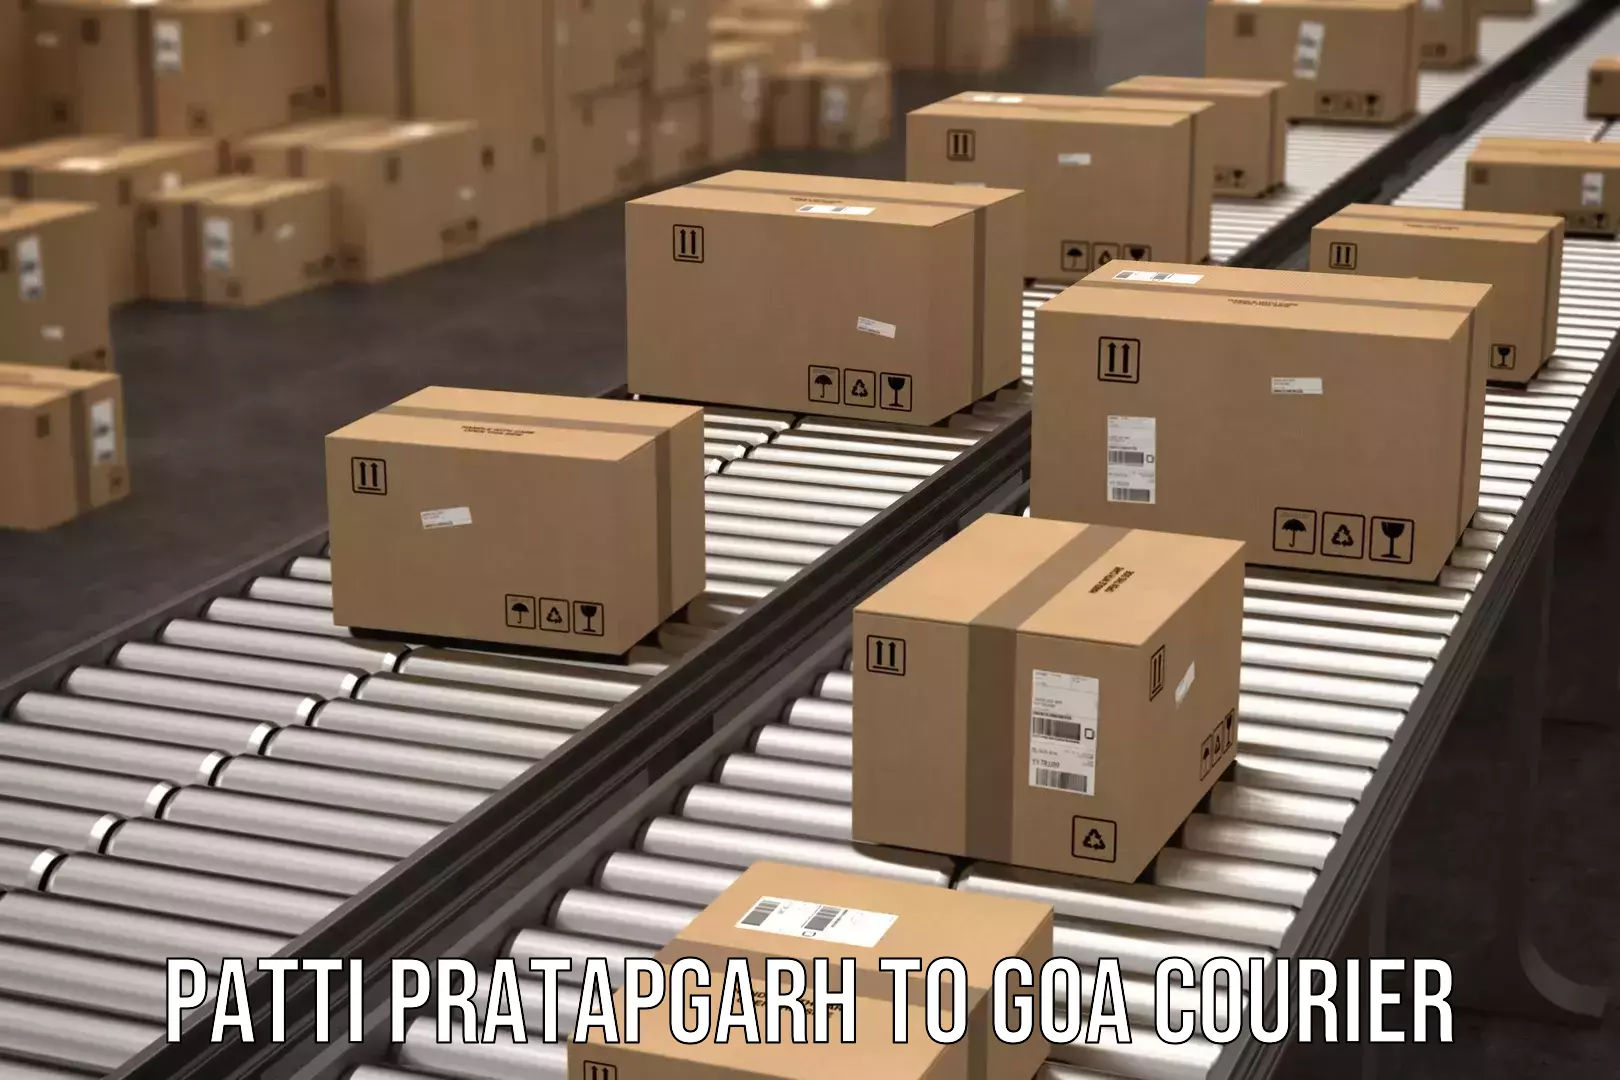 Cross-border shipping in Patti Pratapgarh to Panjim